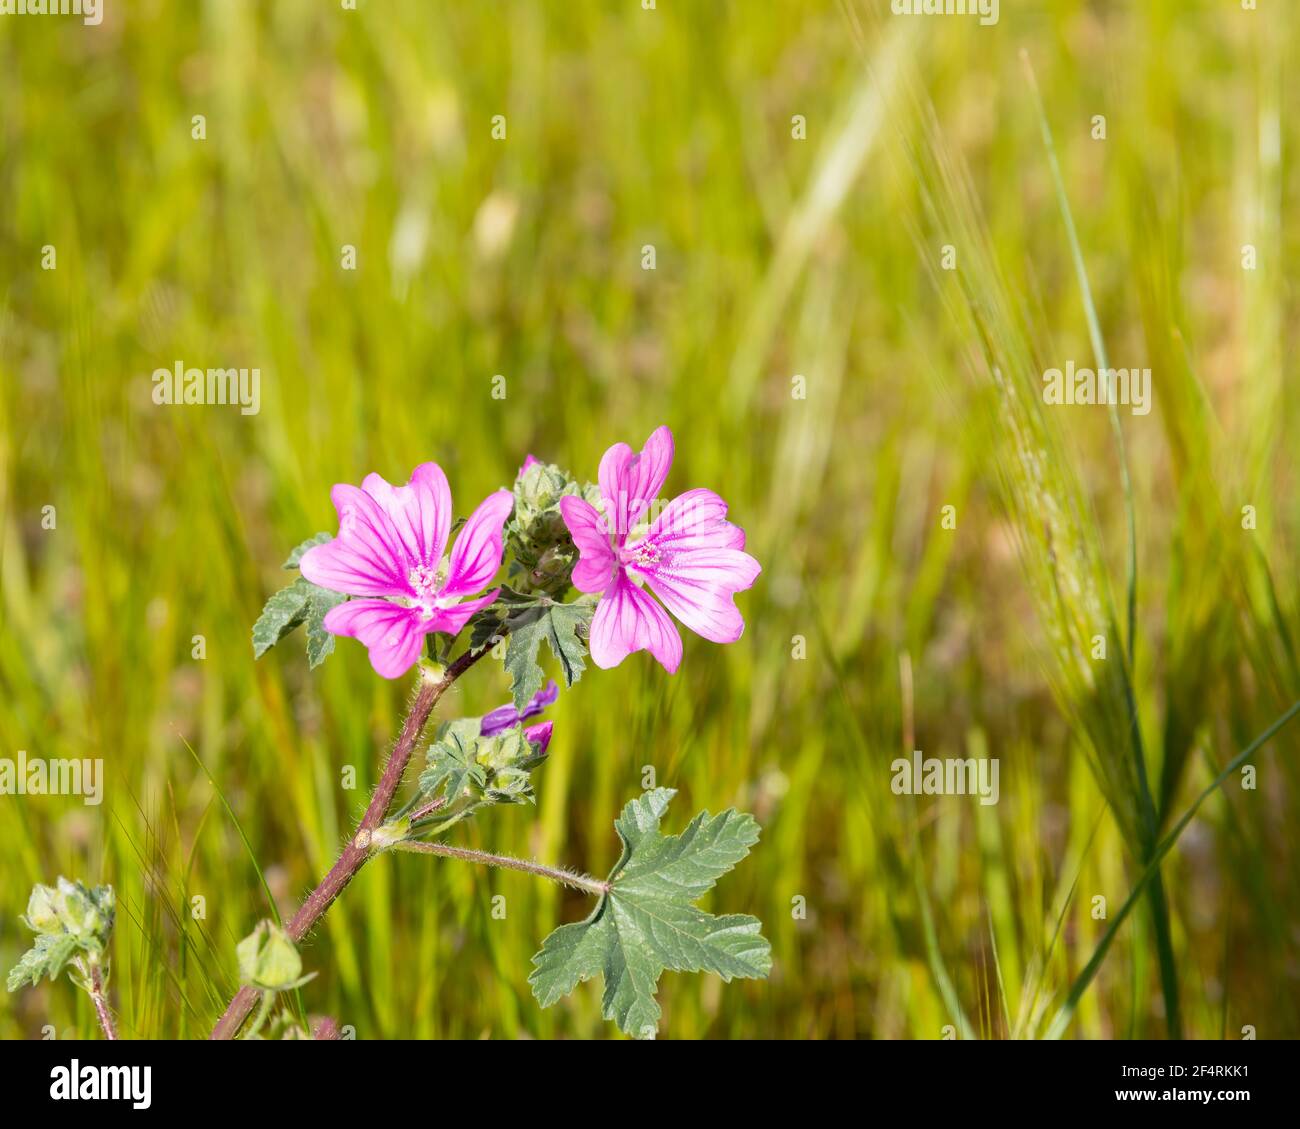 Bellezza in natura. Copia spazio. Fiore selvatico rosa in prato in piena fioritura. Immagine stock. Foto Stock